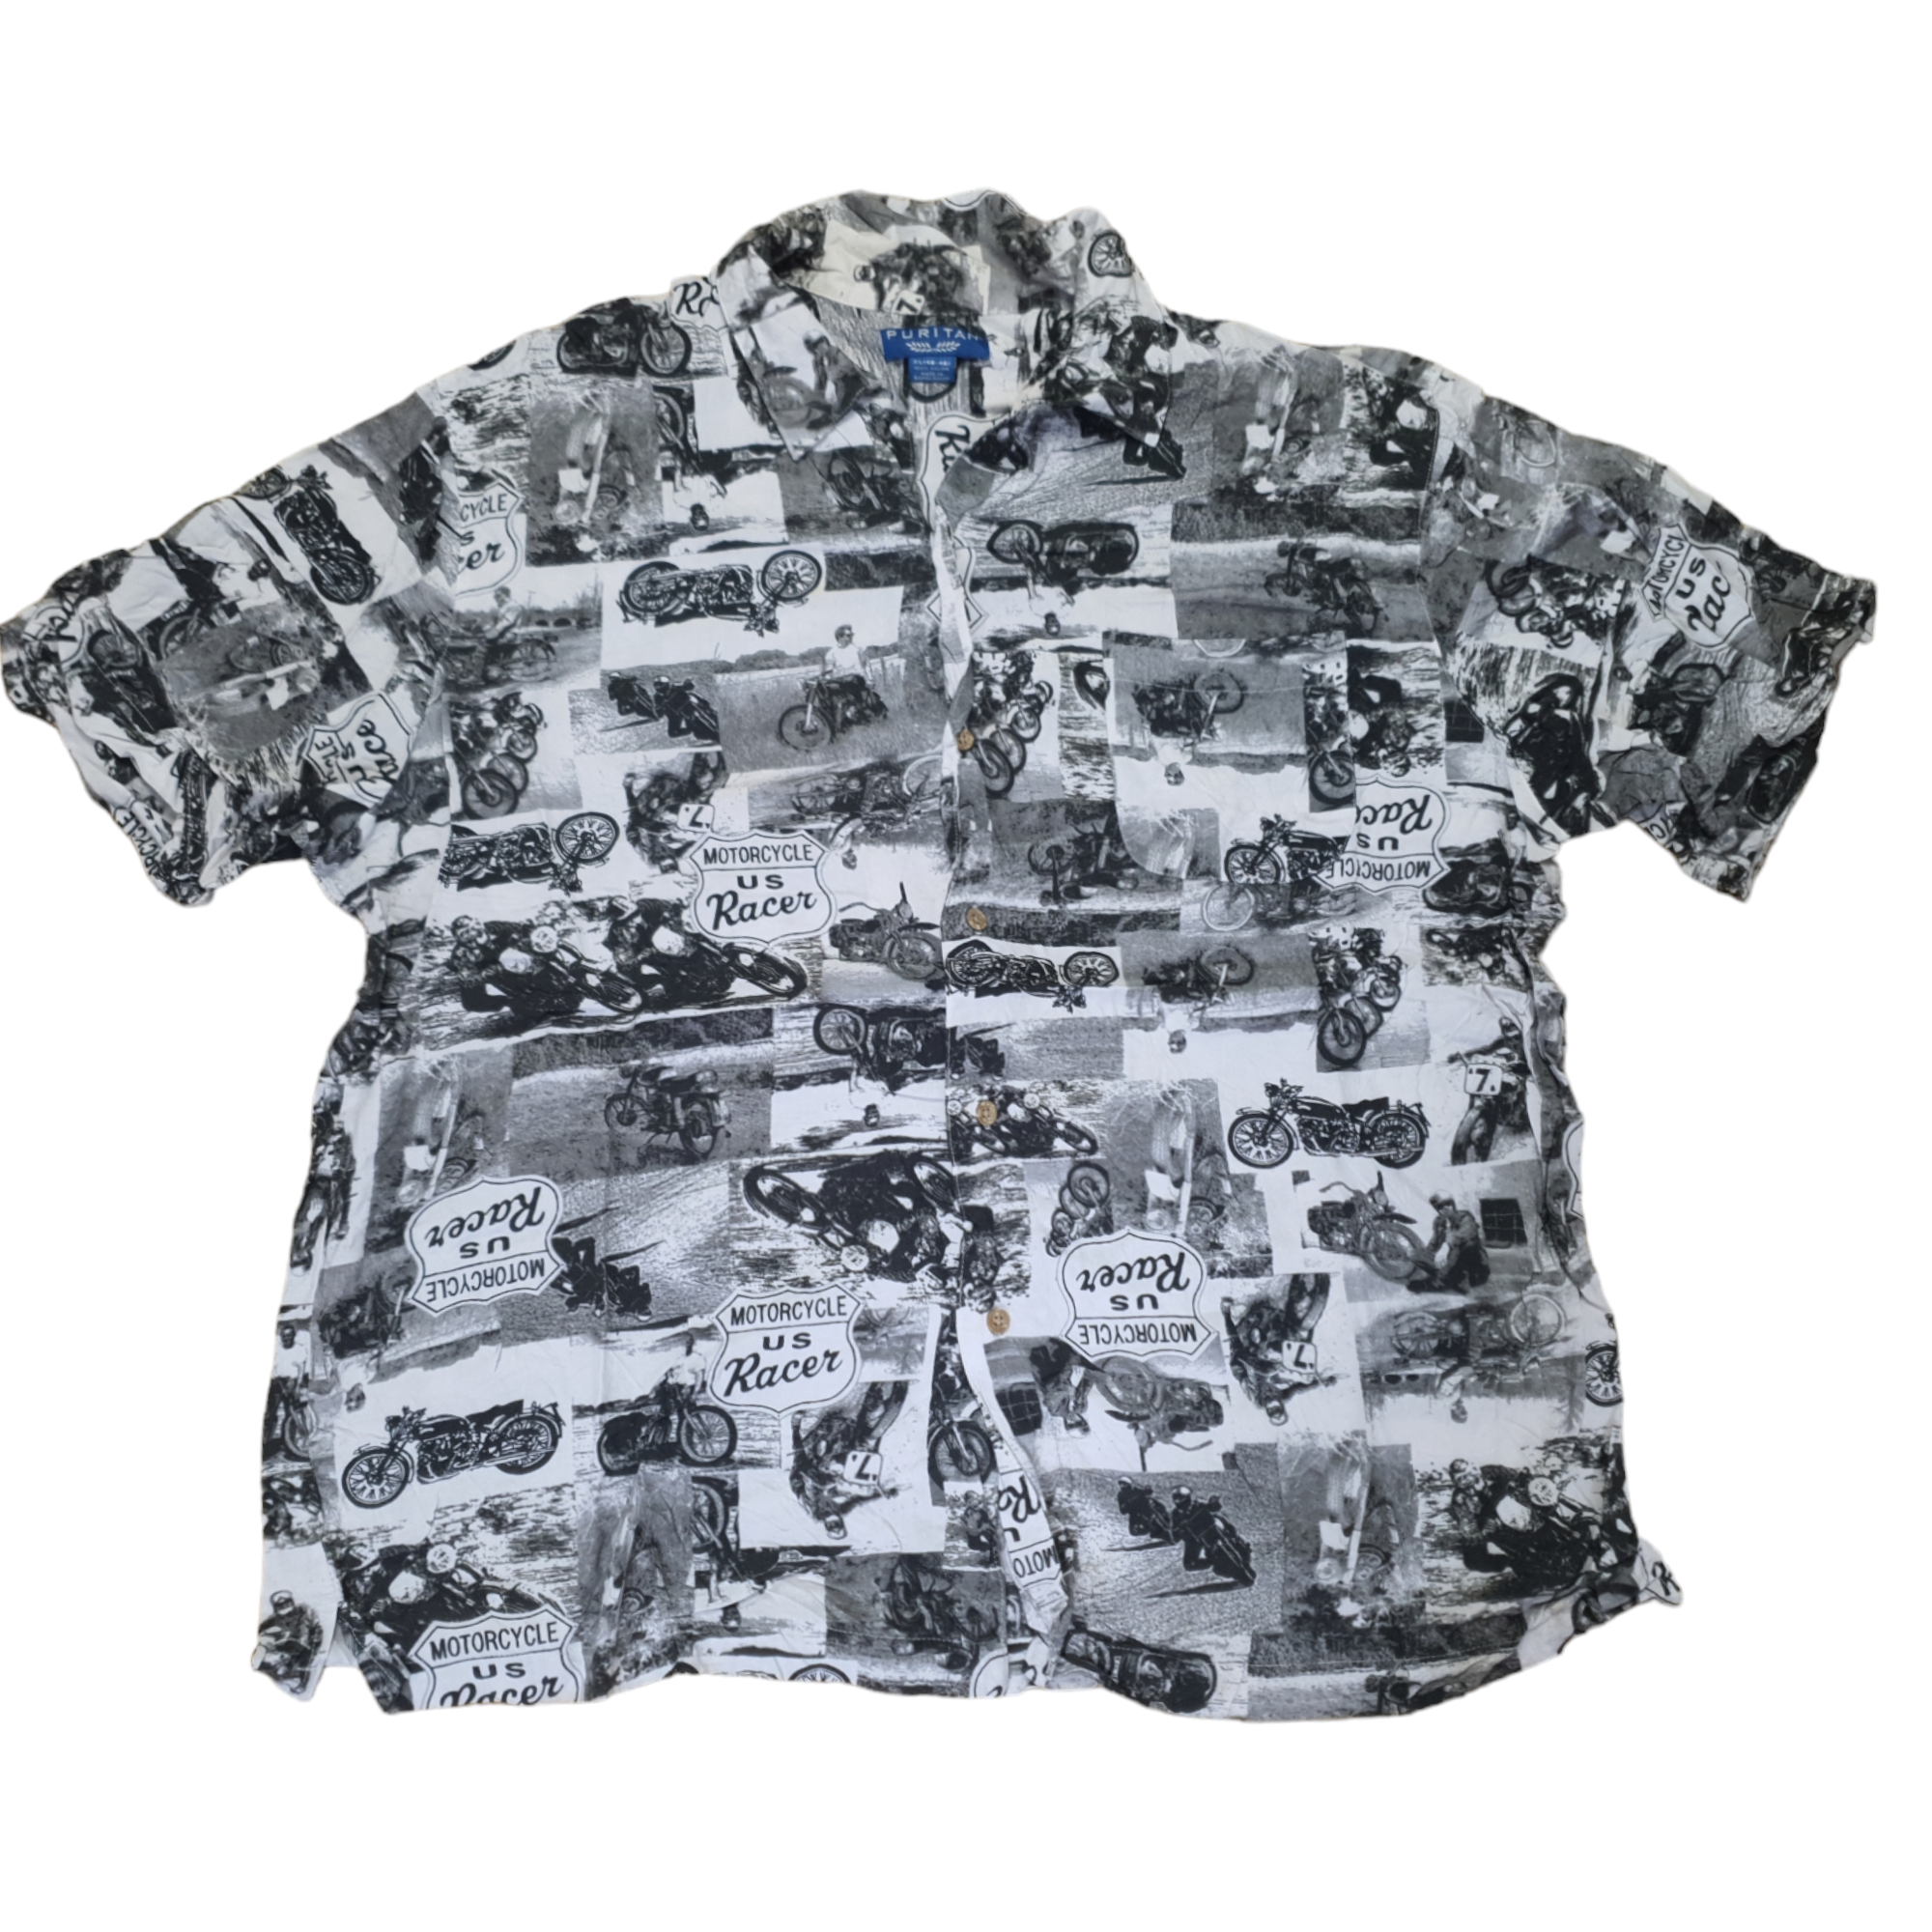 [XL] Puritan Shirt